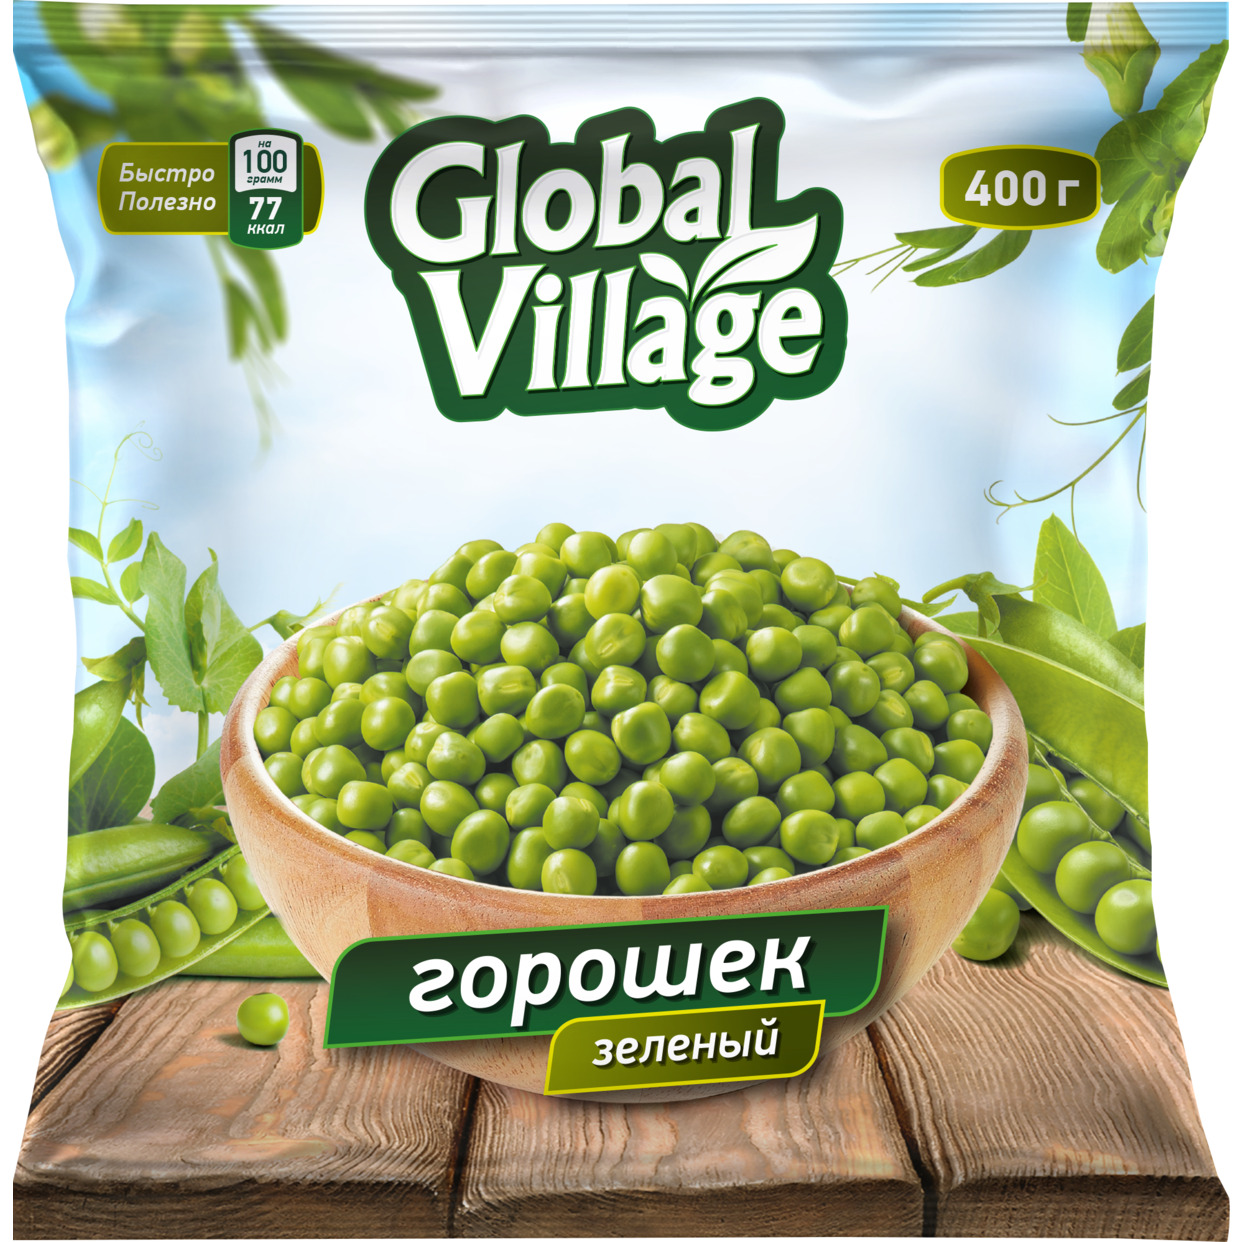 Горошек зеленый "Global Village" быстрозамороженный, 400 гр. по акции в Пятерочке